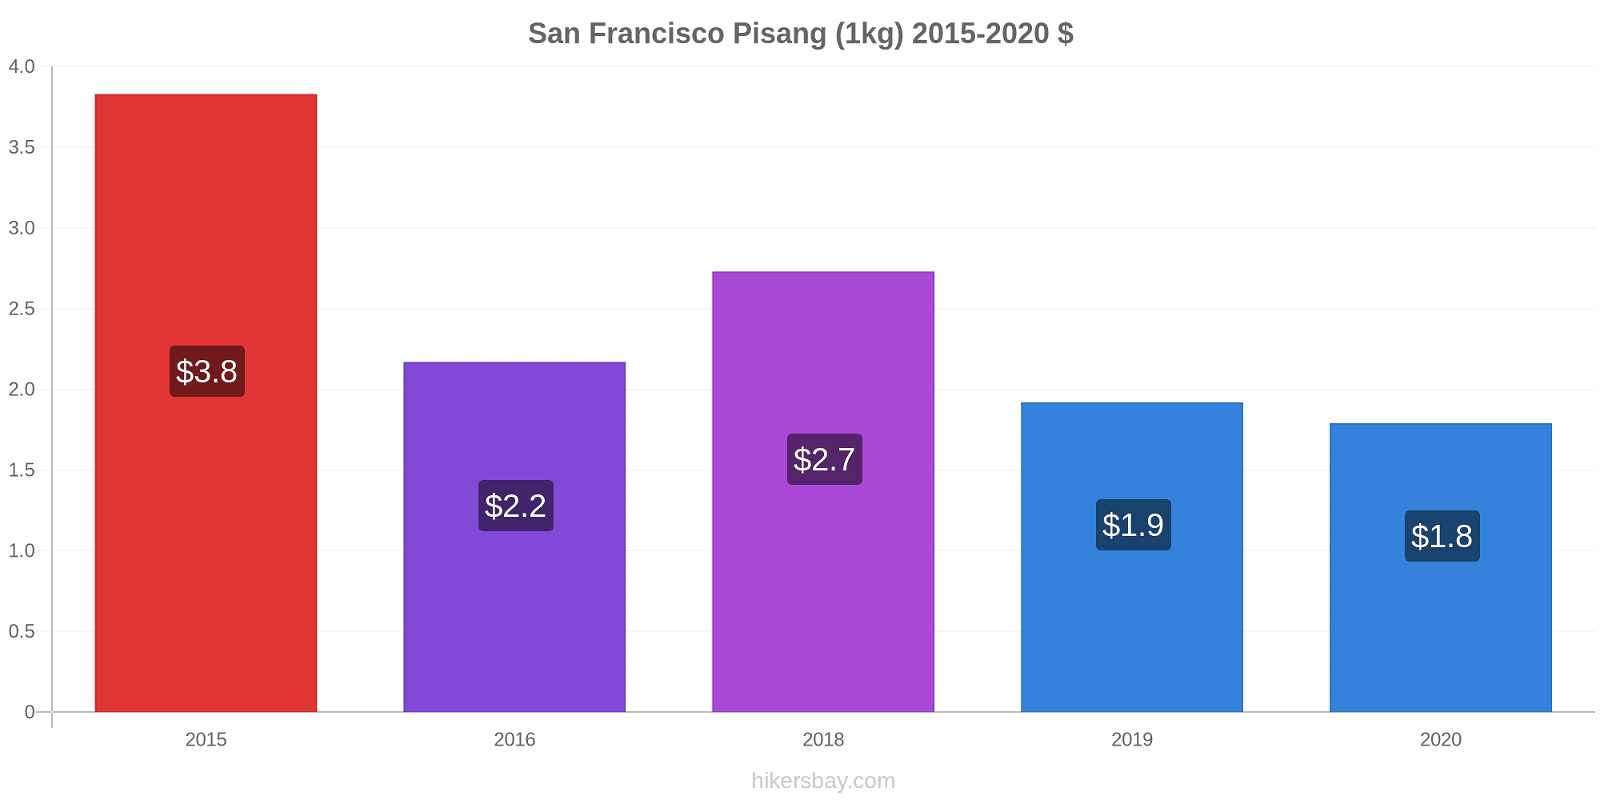 San Francisco perubahan harga Pisang (1kg) hikersbay.com